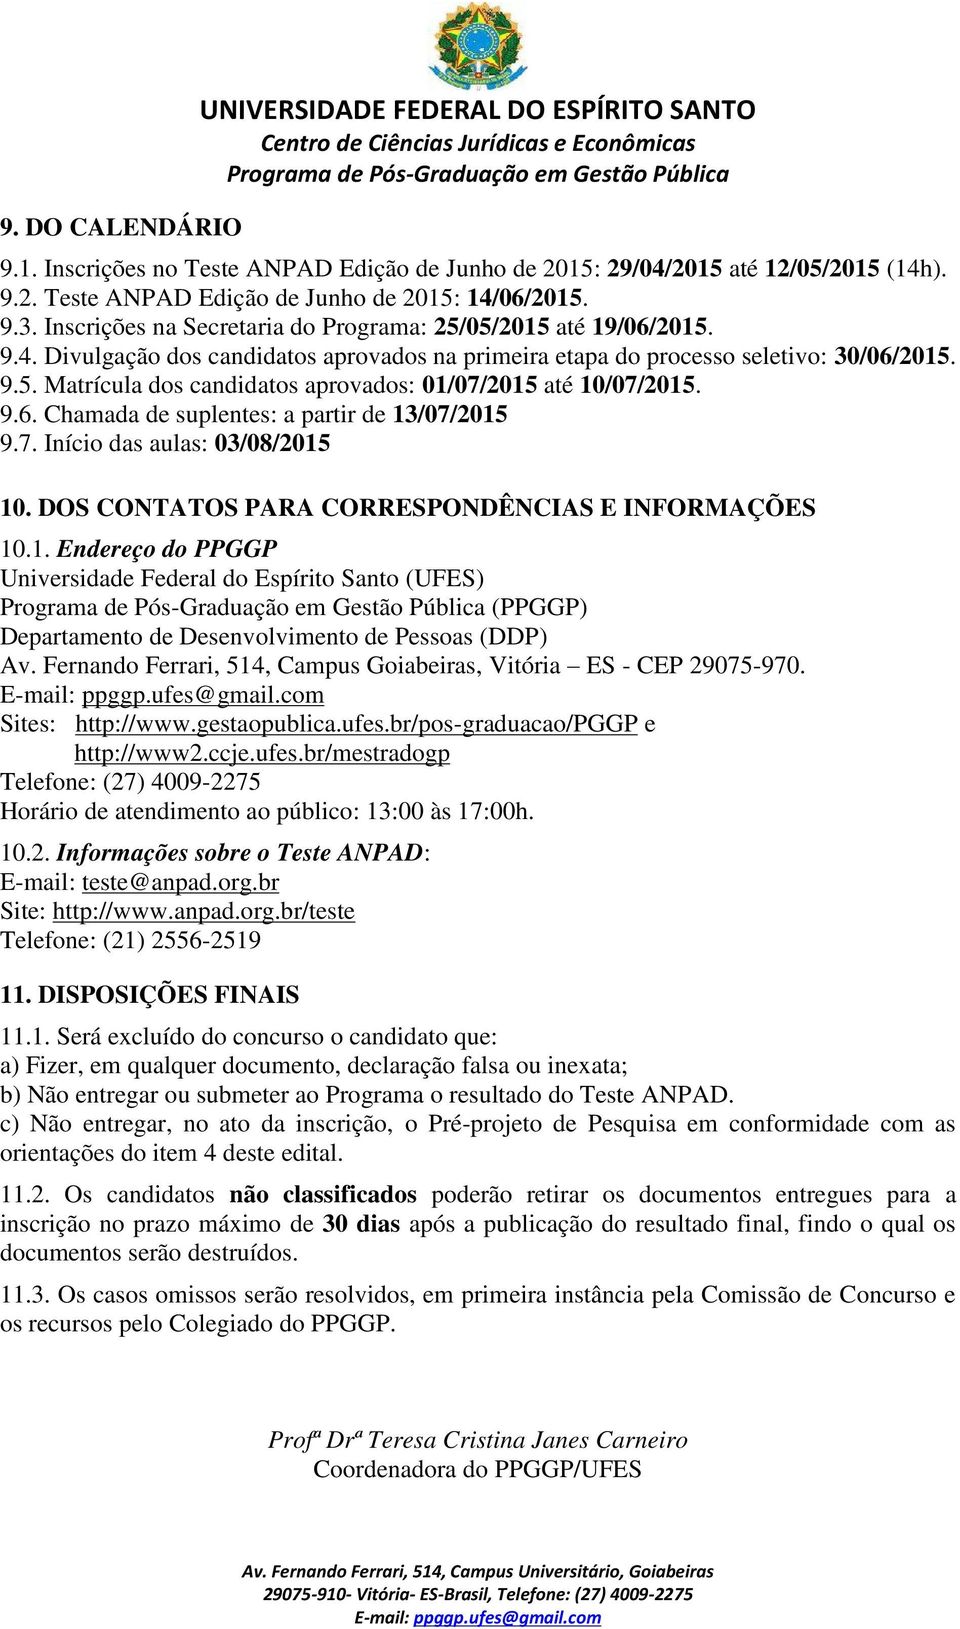 9.6. Chamada de suplentes: a partir de 13/07/2015 9.7. Início das aulas: 03/08/2015 10. DOS CONTATOS PARA CORRESPONDÊNCIAS E INFORMAÇÕES 10.1. Endereço do PPGGP Universidade Federal do Espírito Santo (UFES) (PPGGP) Departamento de Desenvolvimento de Pessoas (DDP) Av.